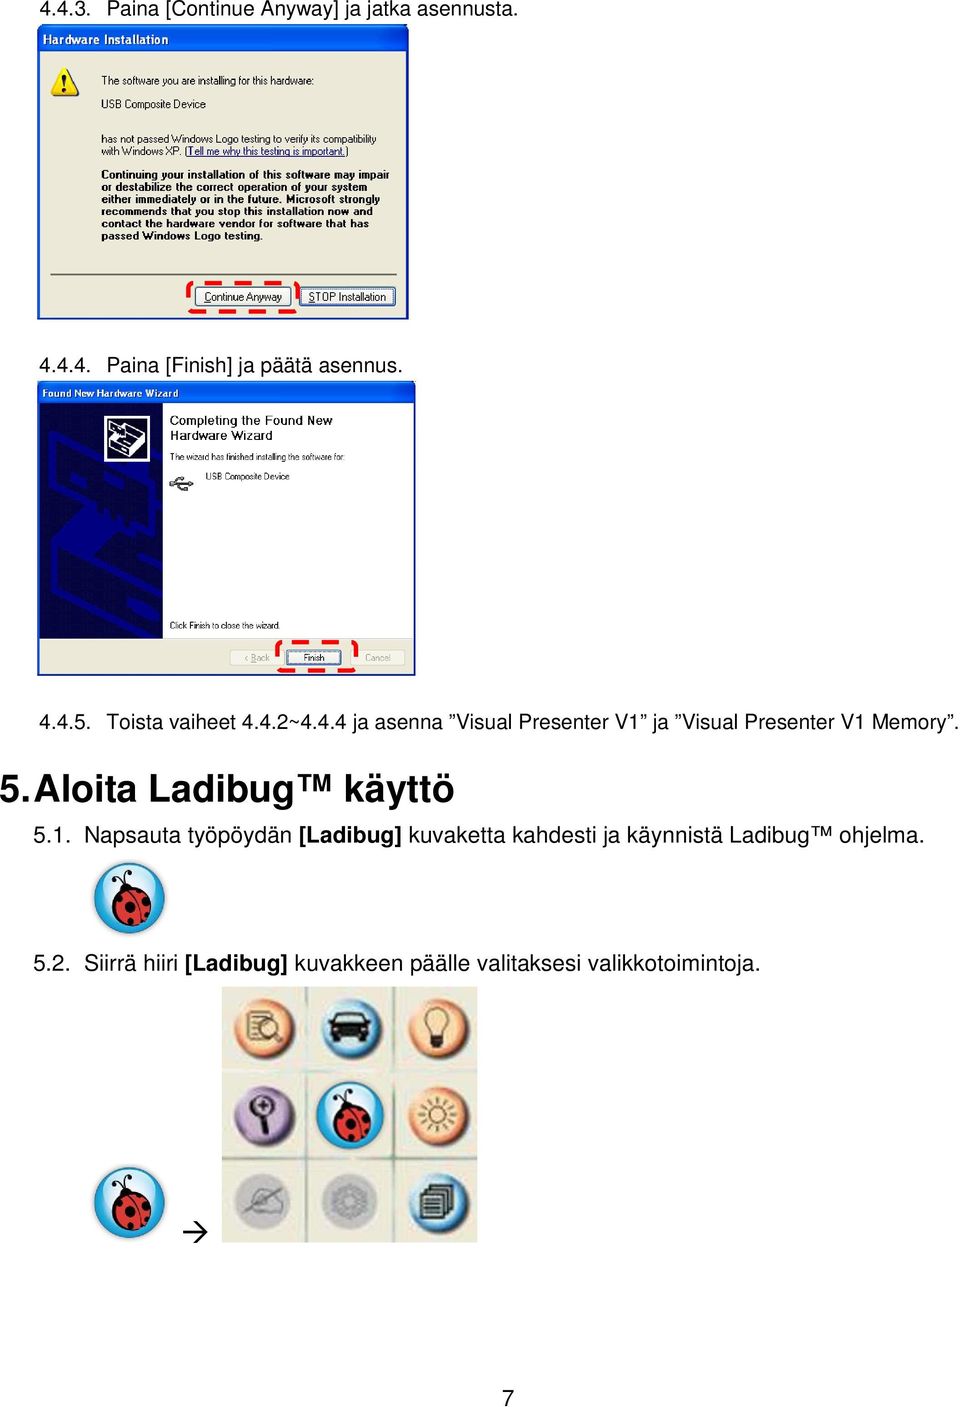 Aloita Ladibug käyttö 5.1.